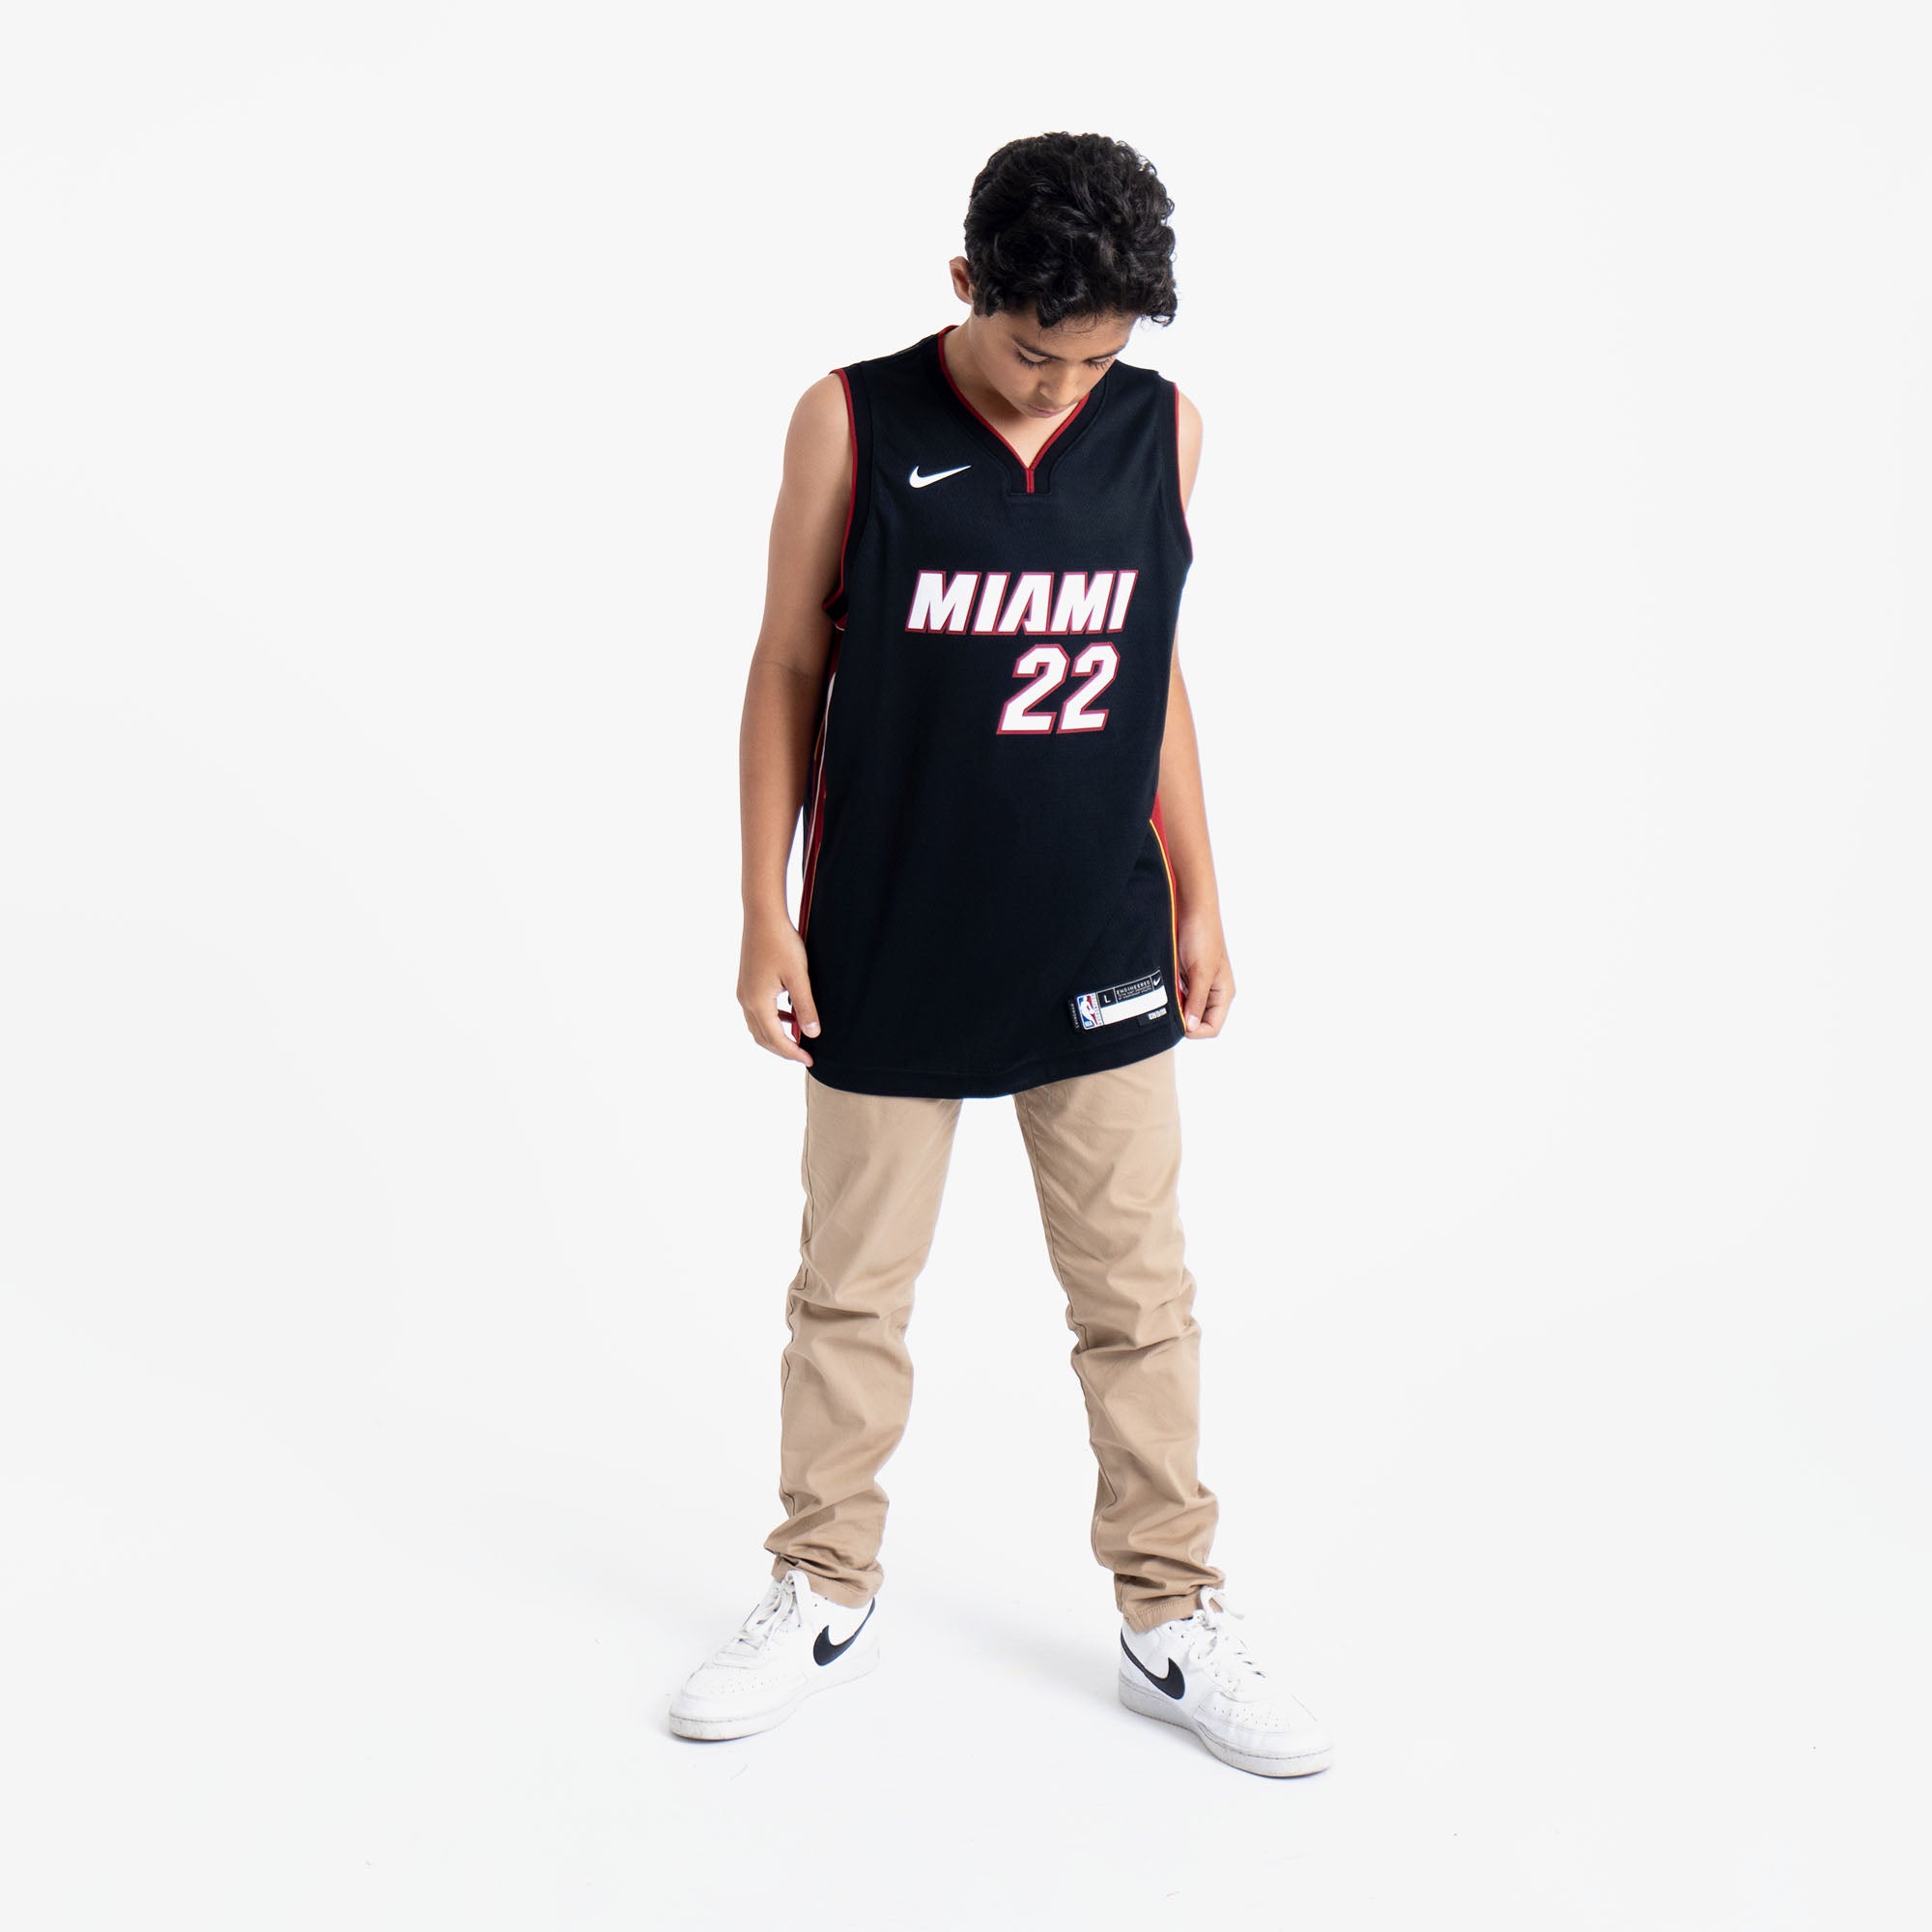 Nike Youth Miami Heat Jimmy Butler #22 Black Swingman Jersey